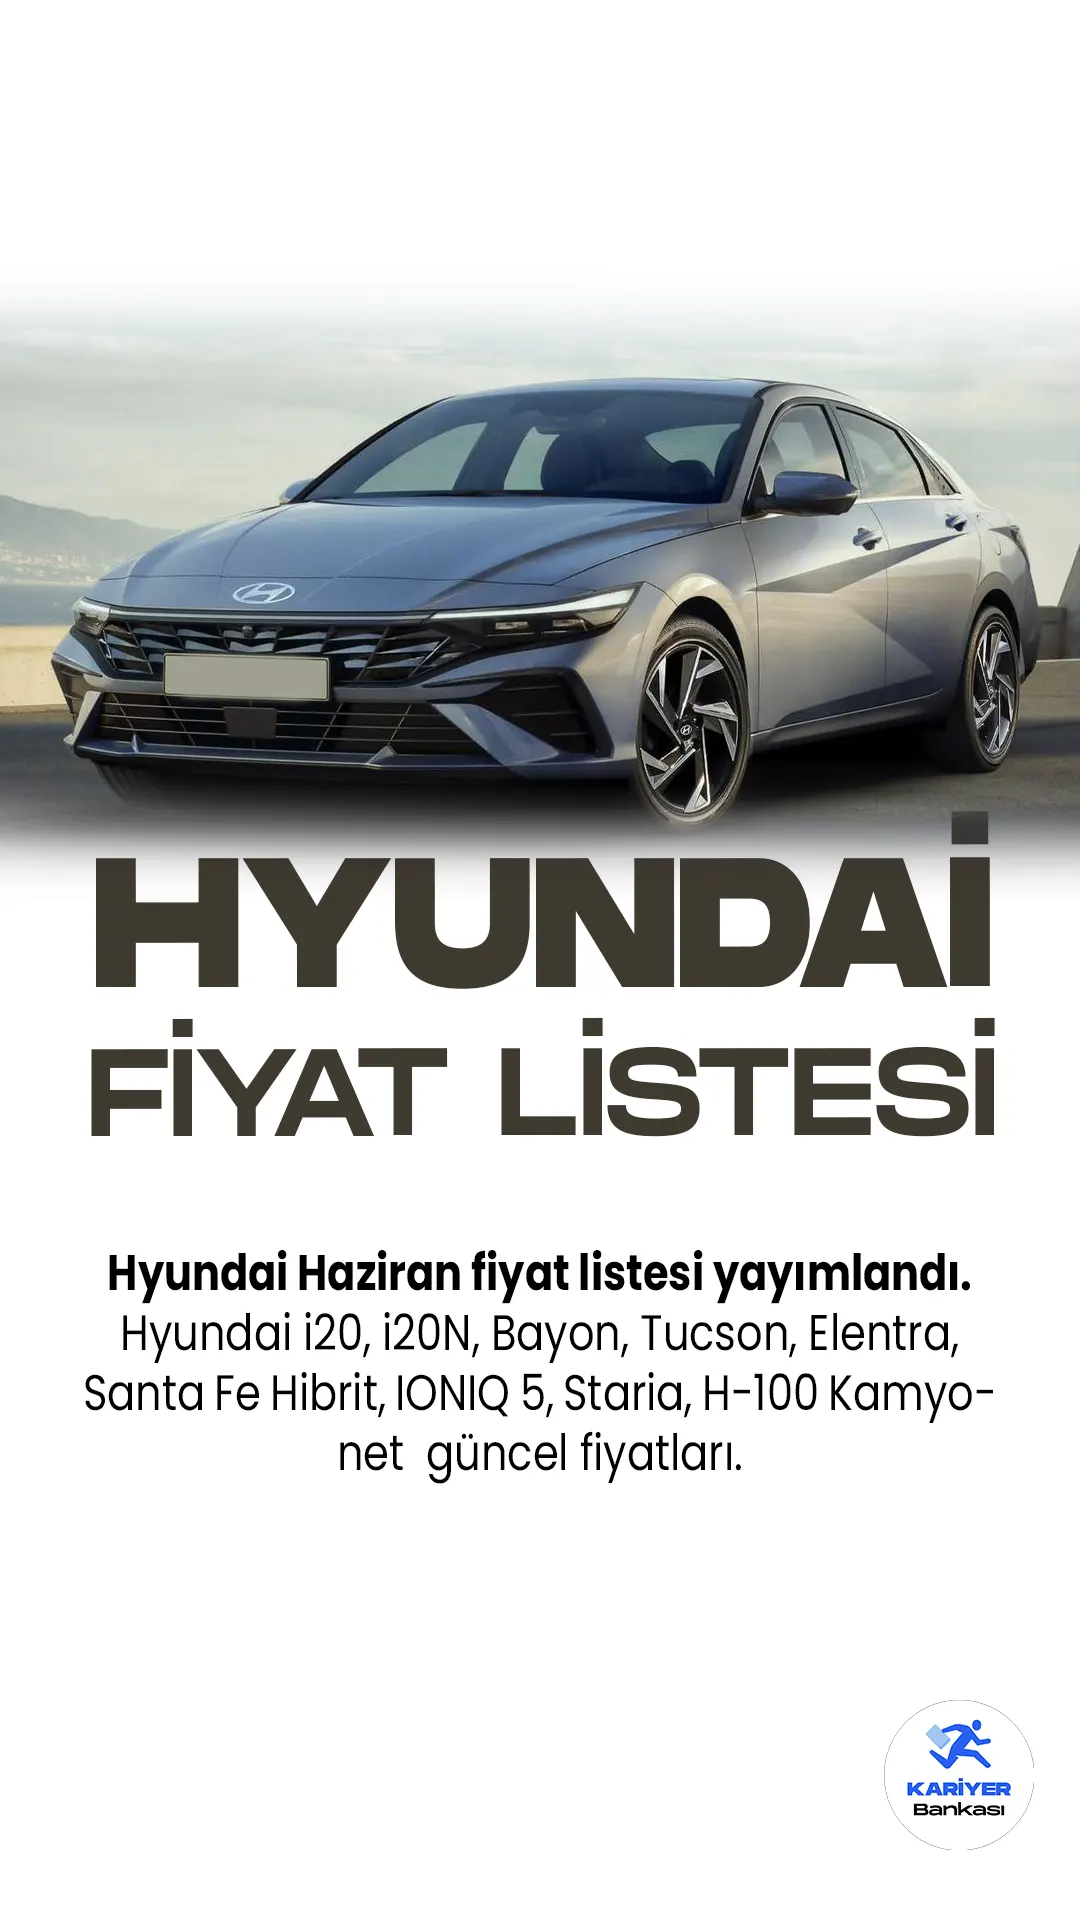 Hyundai Haziran 2023 Fiyat Listesi Yayımlandı!Hyundai, geniş ve çeşitli otomobil portföyüne bir dizi yeni model eklemeye devam ediyor.İ20 şık tasarımı ve gelişmiş teknolojik özellikleriyle dikkat çekiyor. Performans tutkunları için ise İ20N, yüksek hız ve güç sunuyor.